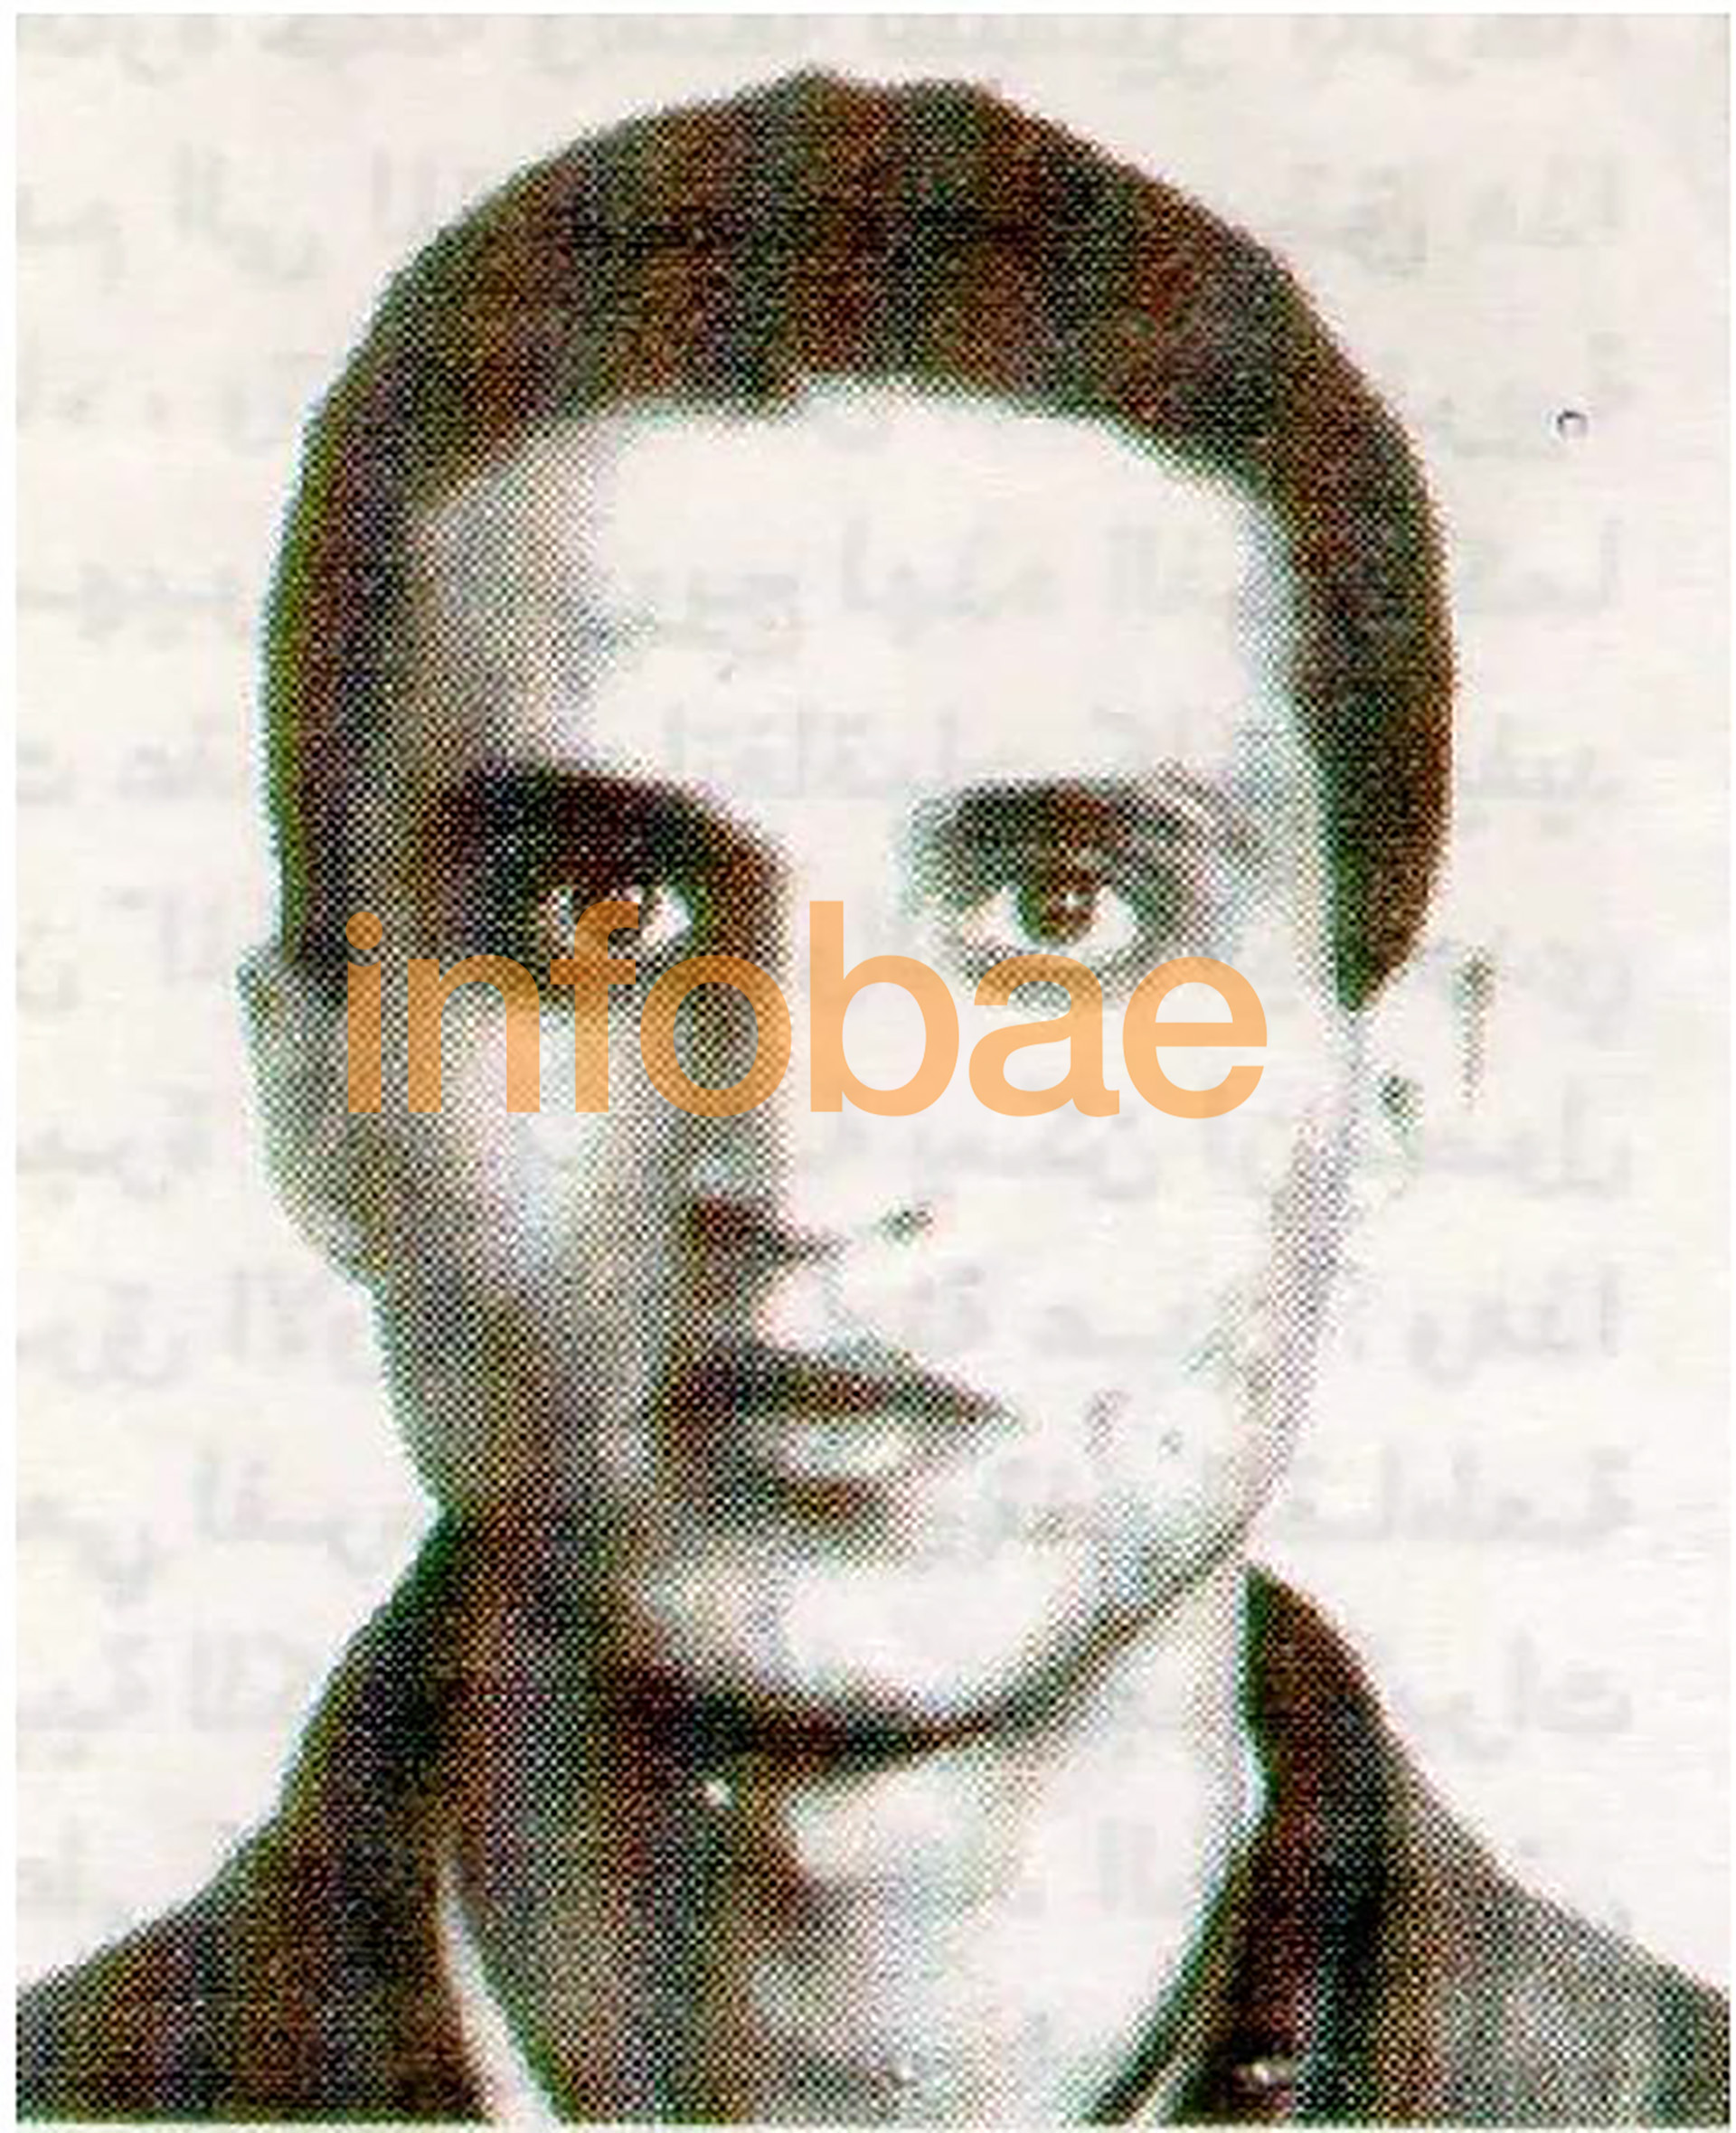 Muhammad Nur Al-Din Nuer Al-Din fue identificado como el conductor suicida.